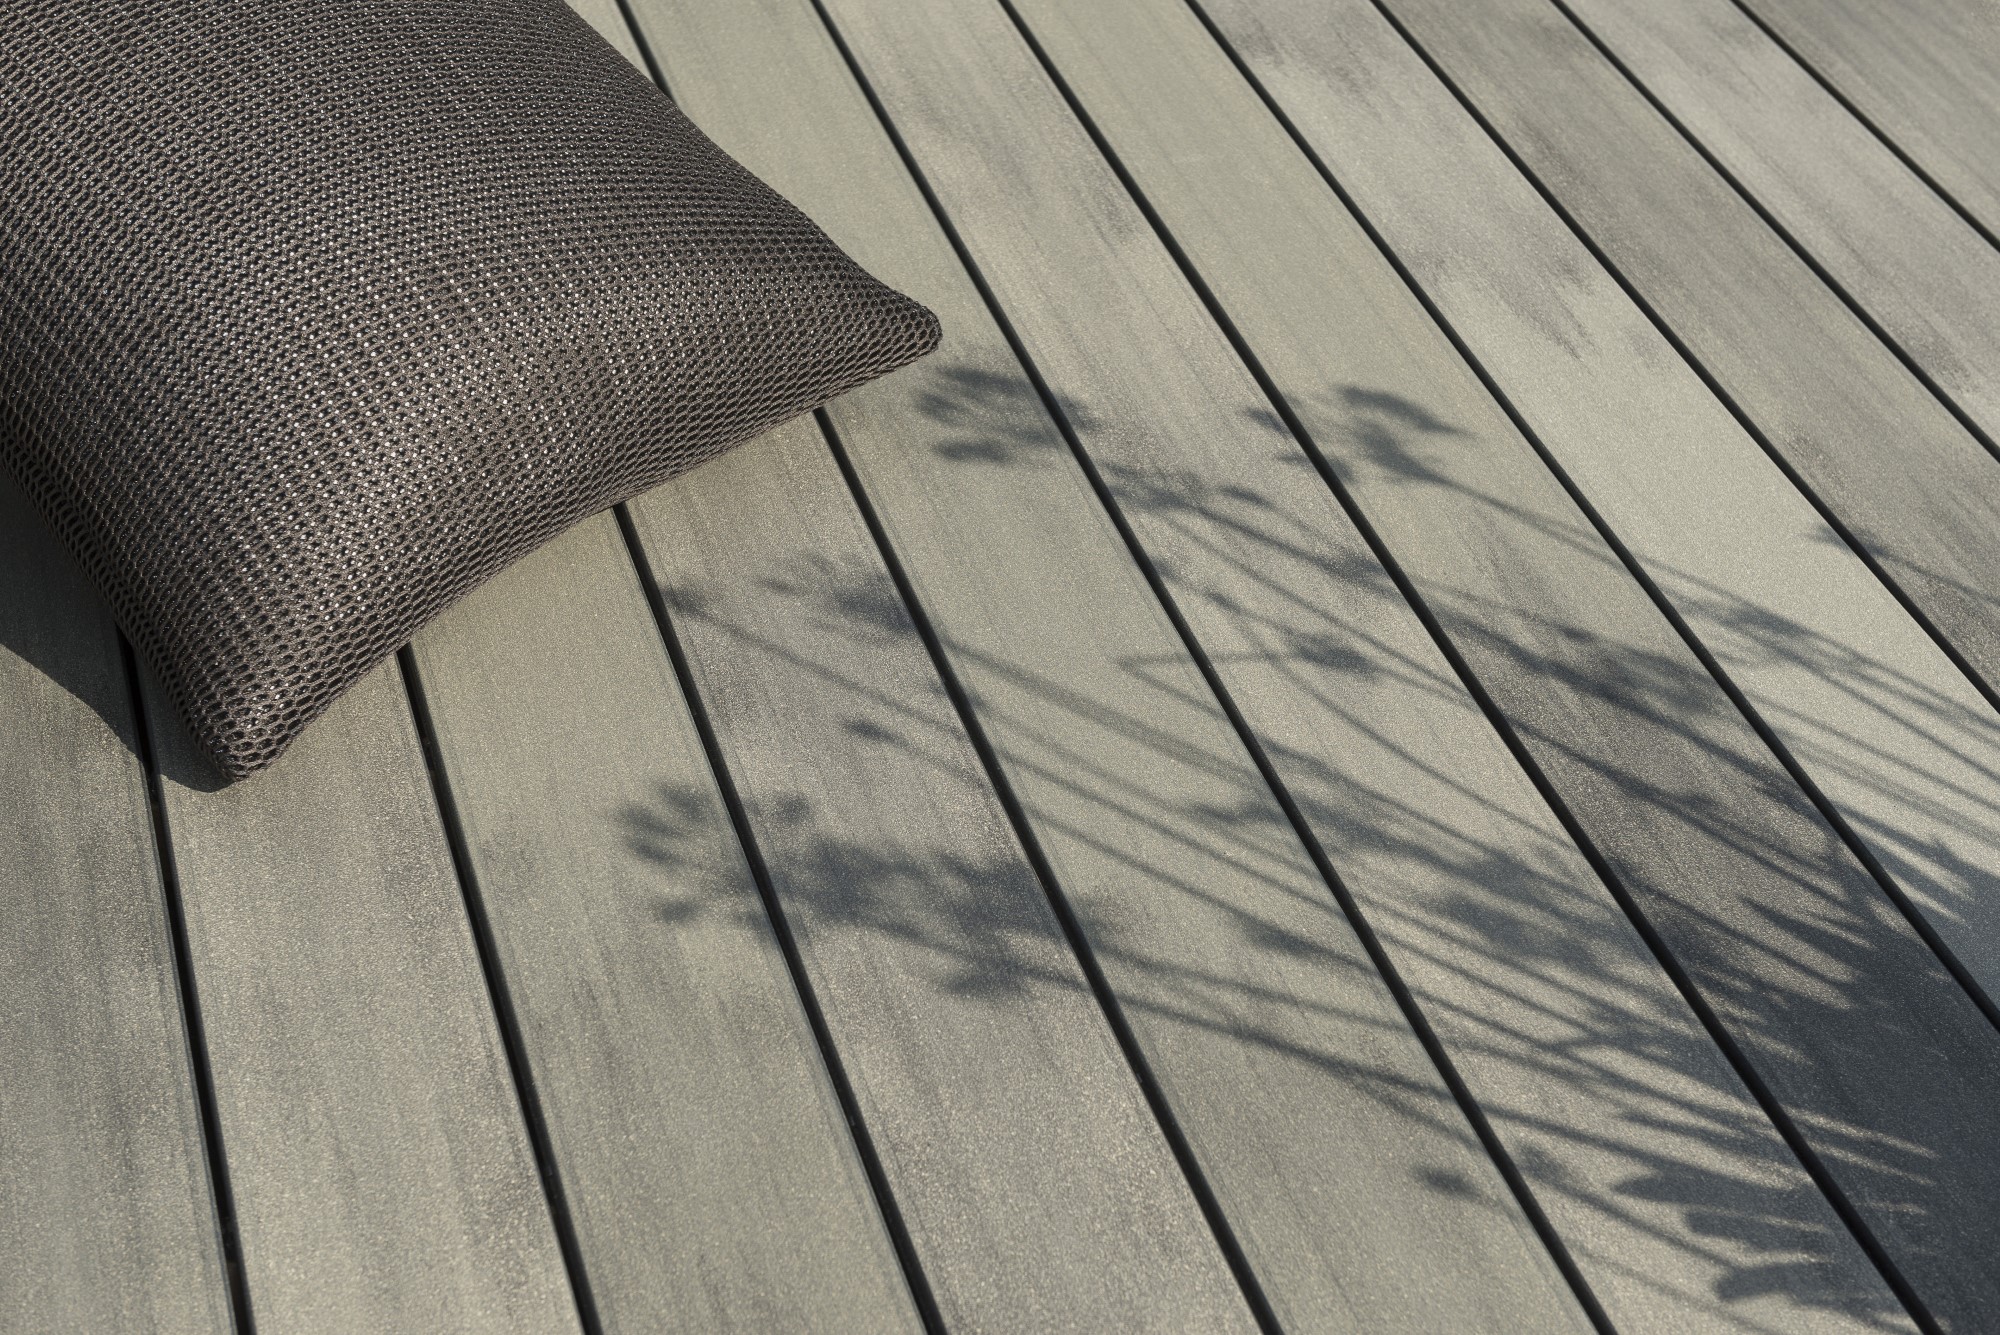 La terrasse en bois composite : est-ce une bonne idée ?